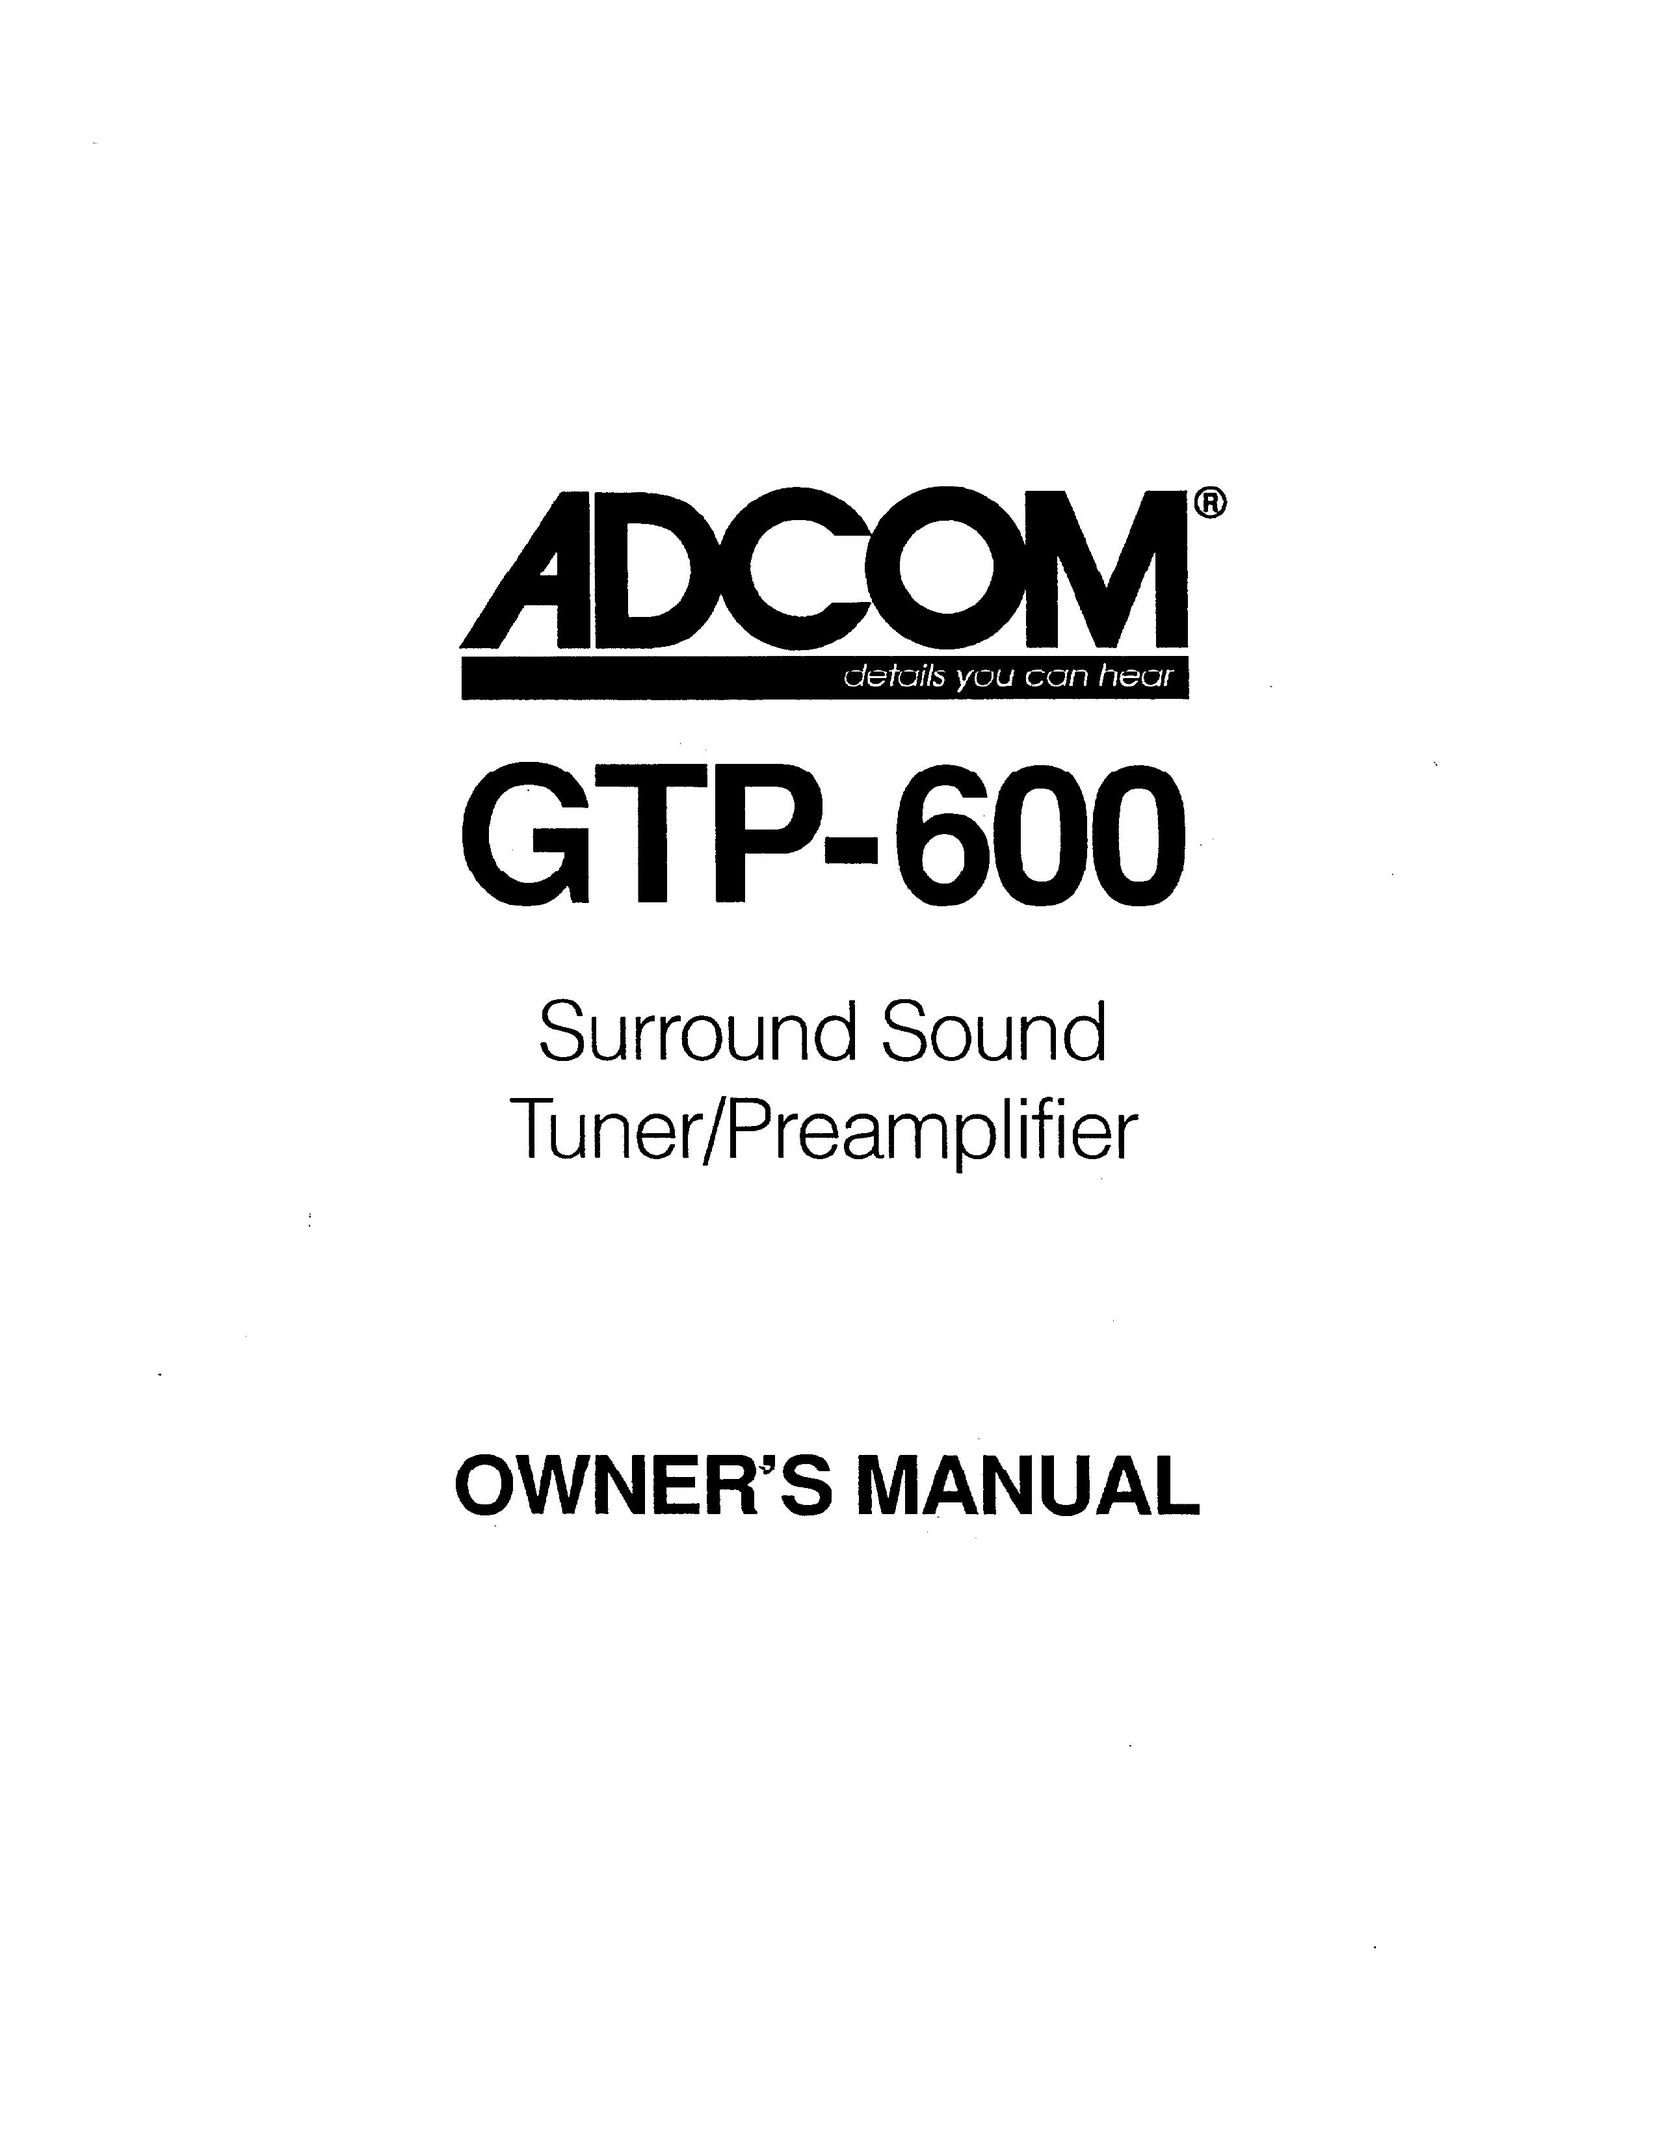 Adcom GTP-600 Stereo Receiver User Manual